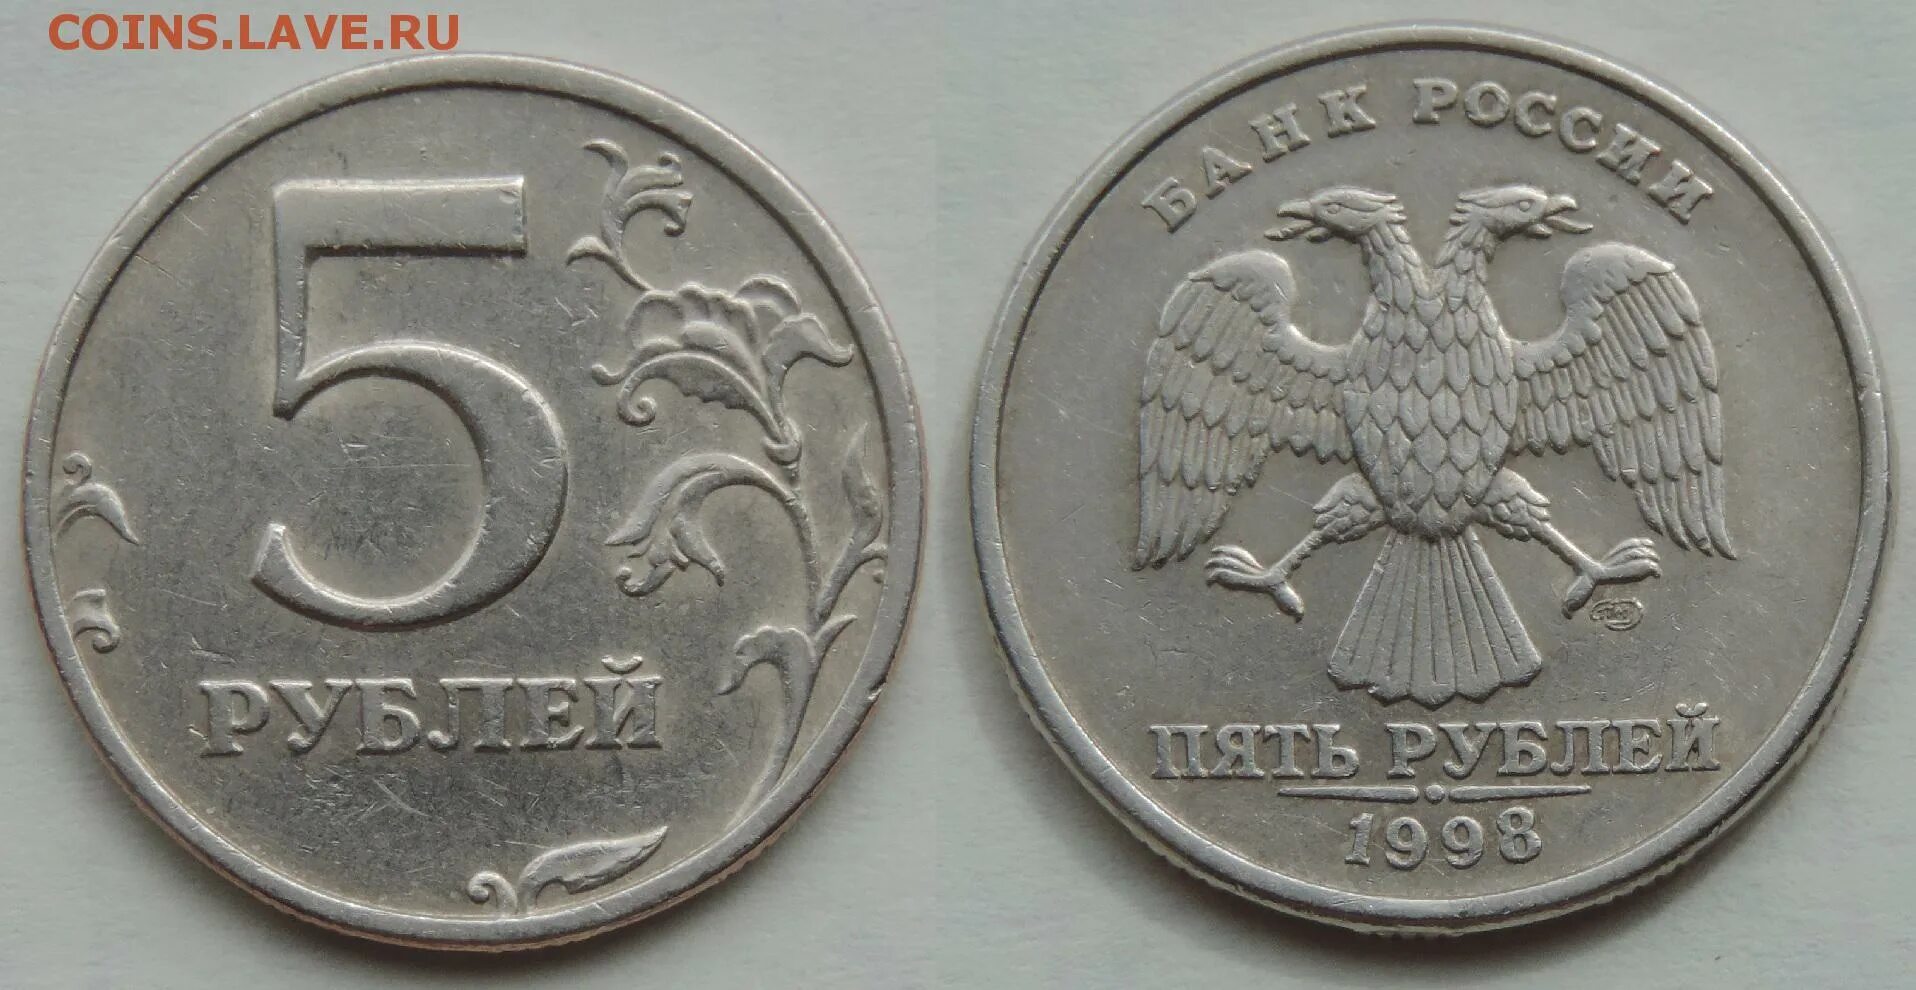 5 рублей 98 года. 5 Рублей 1998 шт 2.4. Монета 5 рублей 1998 СПМД. Редкая монета 5 рублей 1998. 5 Рублей 1998 СПМД редкая.